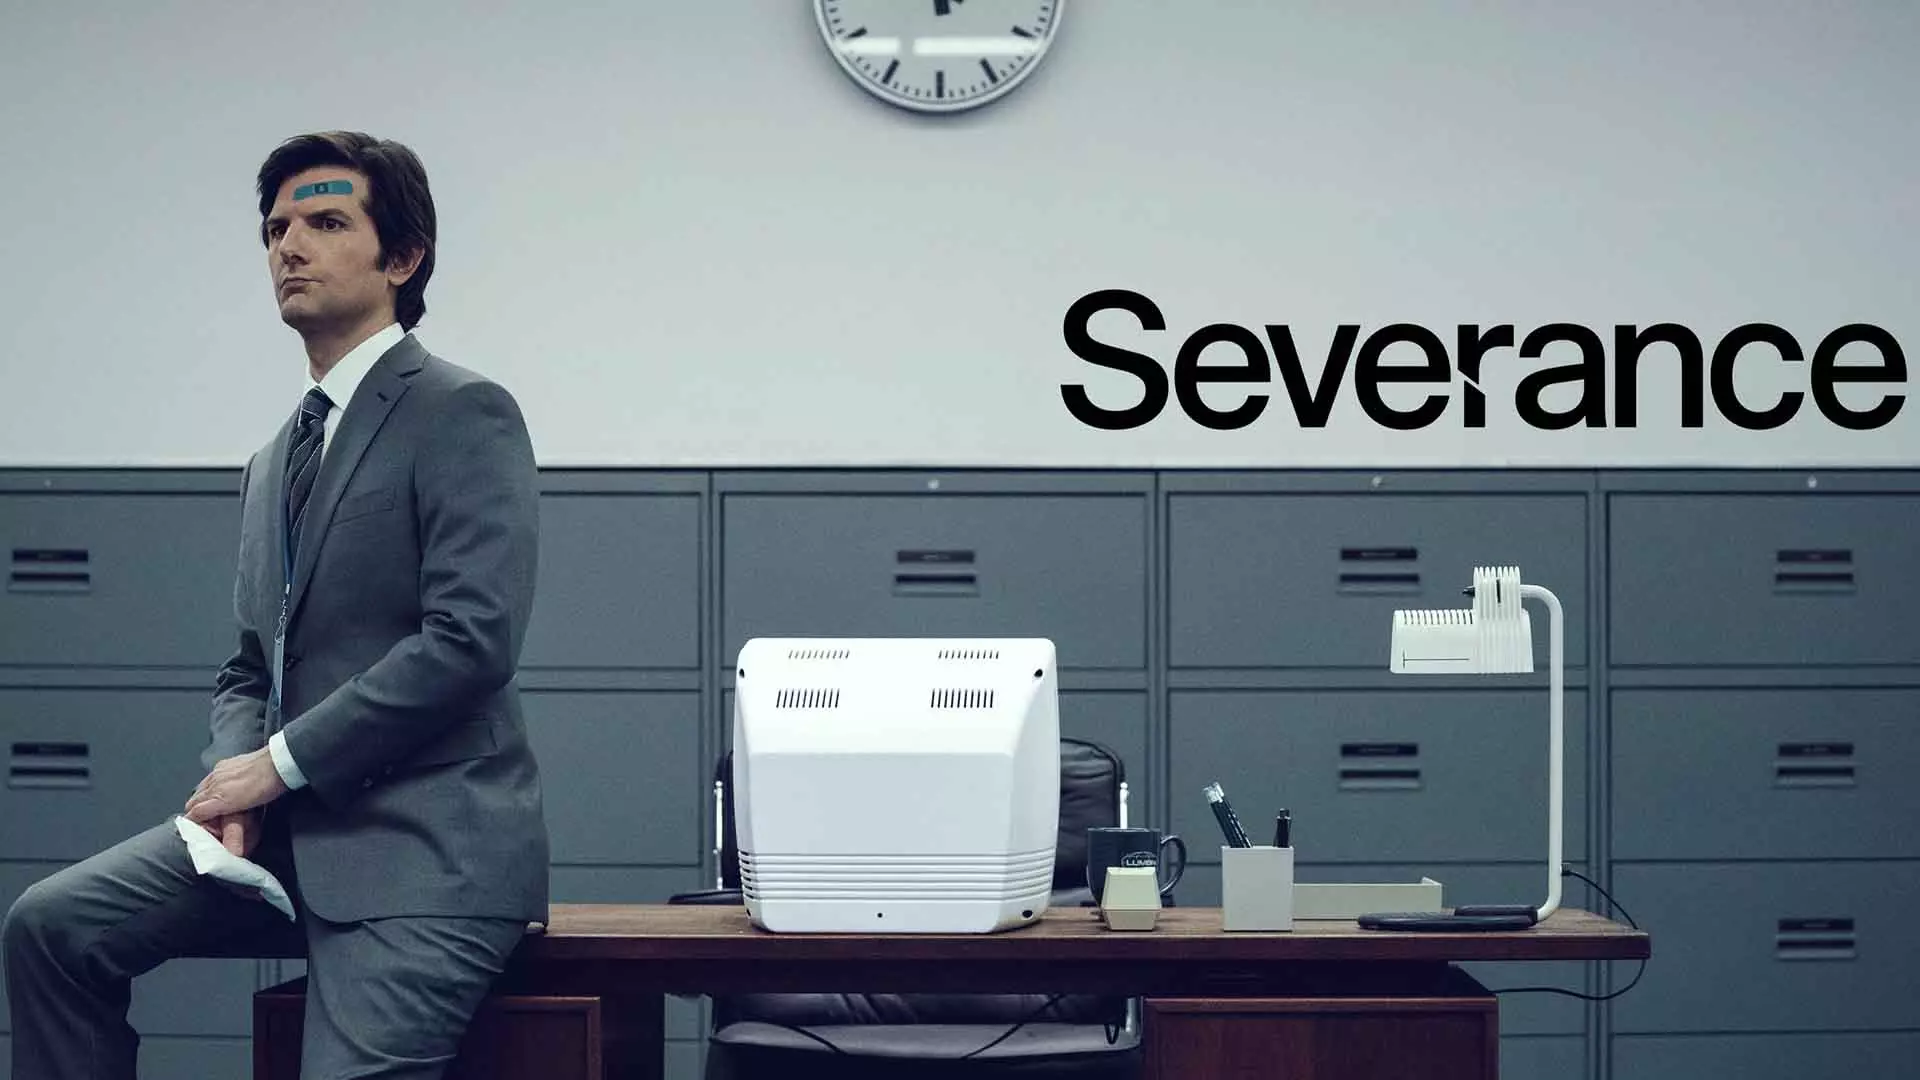 آدام اسکات در پوستر اصلی سریال severance روی میز نشسته است